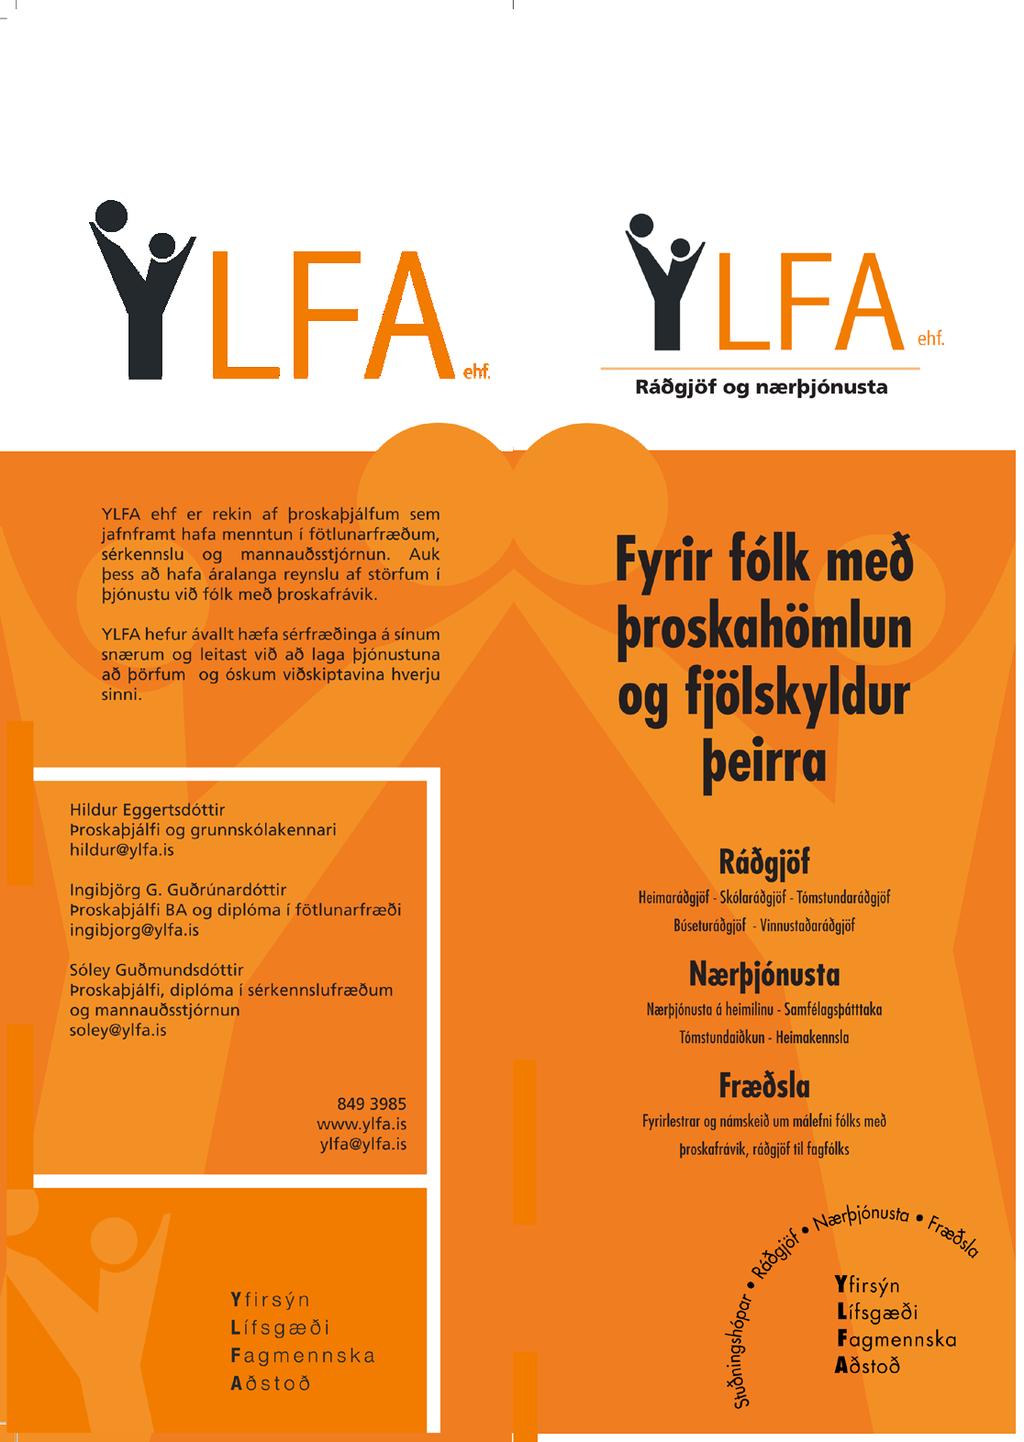 Ylfa ehf. Ylfa ehf. var stofnuð á gamlársdag árið 2006 af þroskaþjálfunum Sóleyju Guðmundsdóttur og Ingibjörgu G.